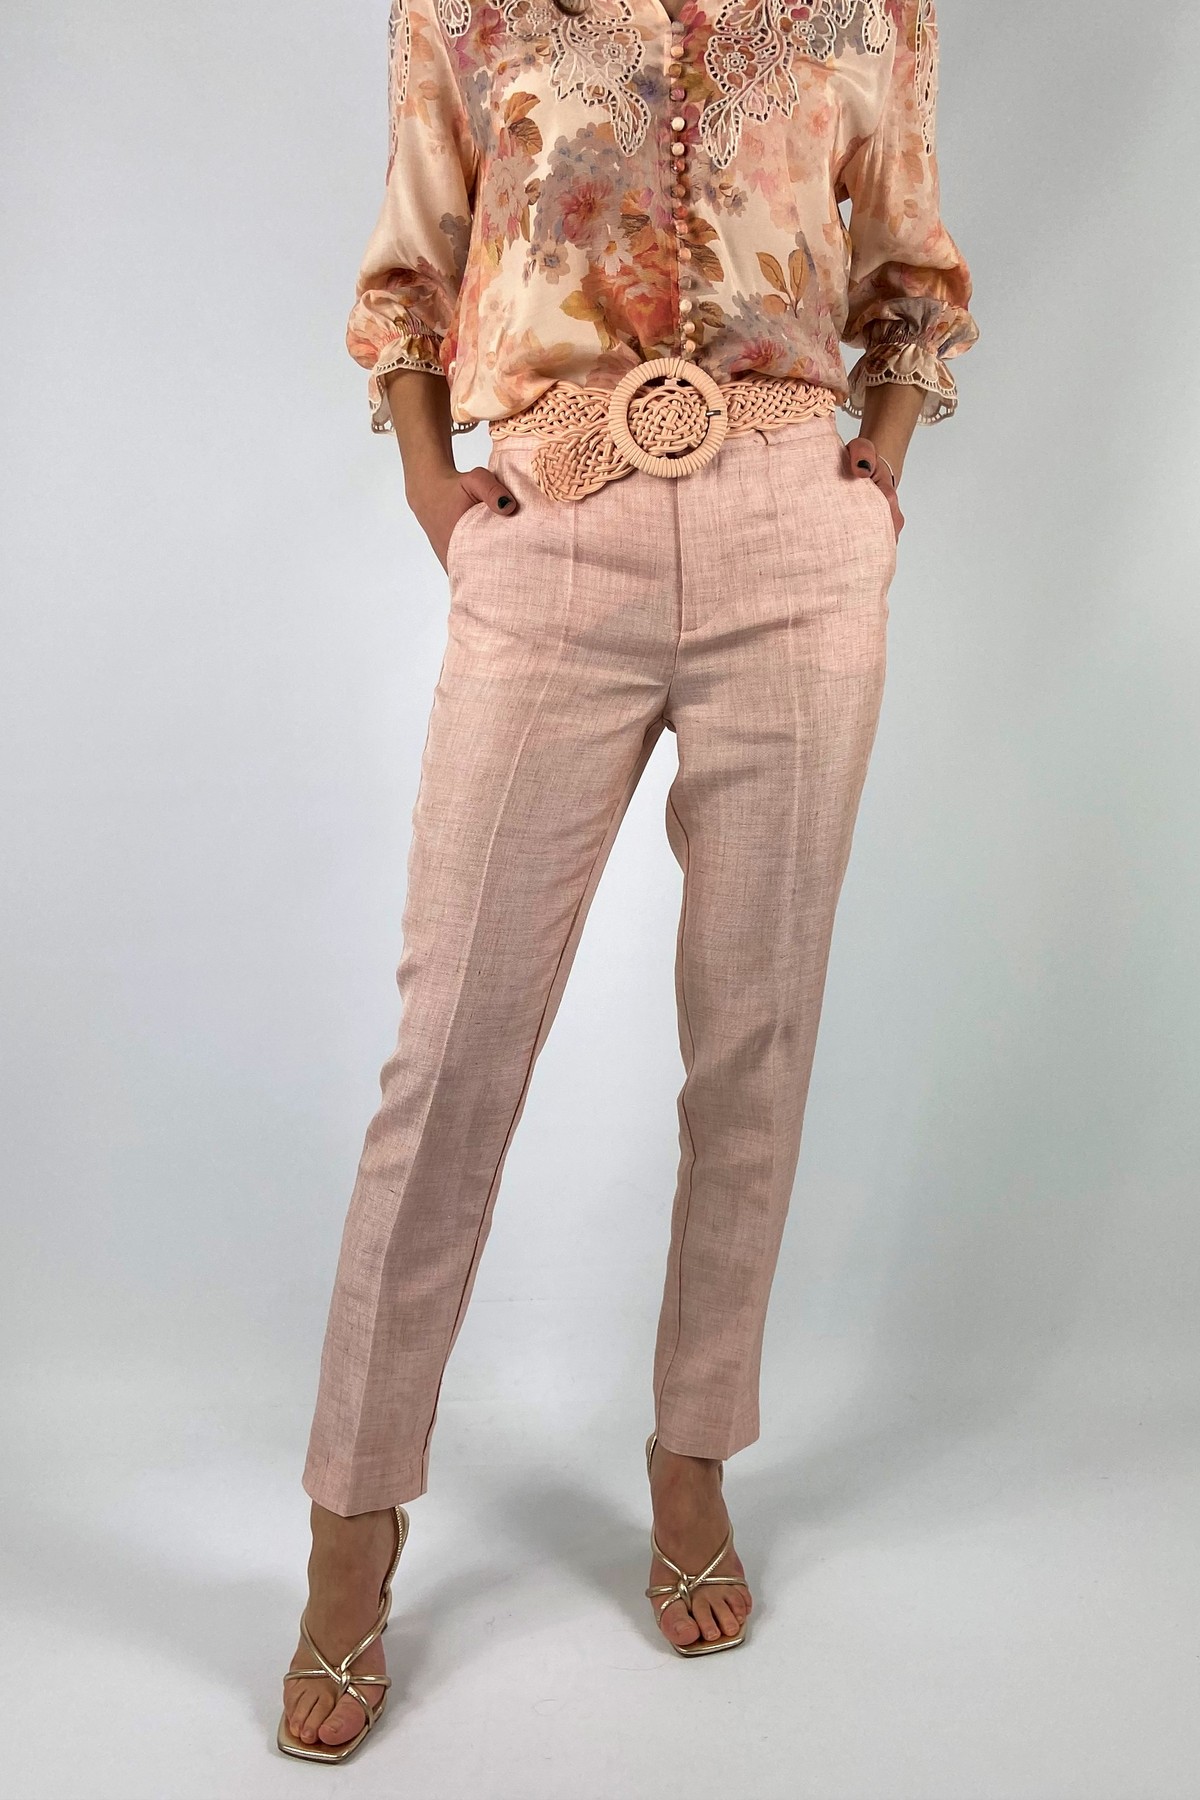 Broek italiaans linnen in de kleur pink van het merk Oscar the collection